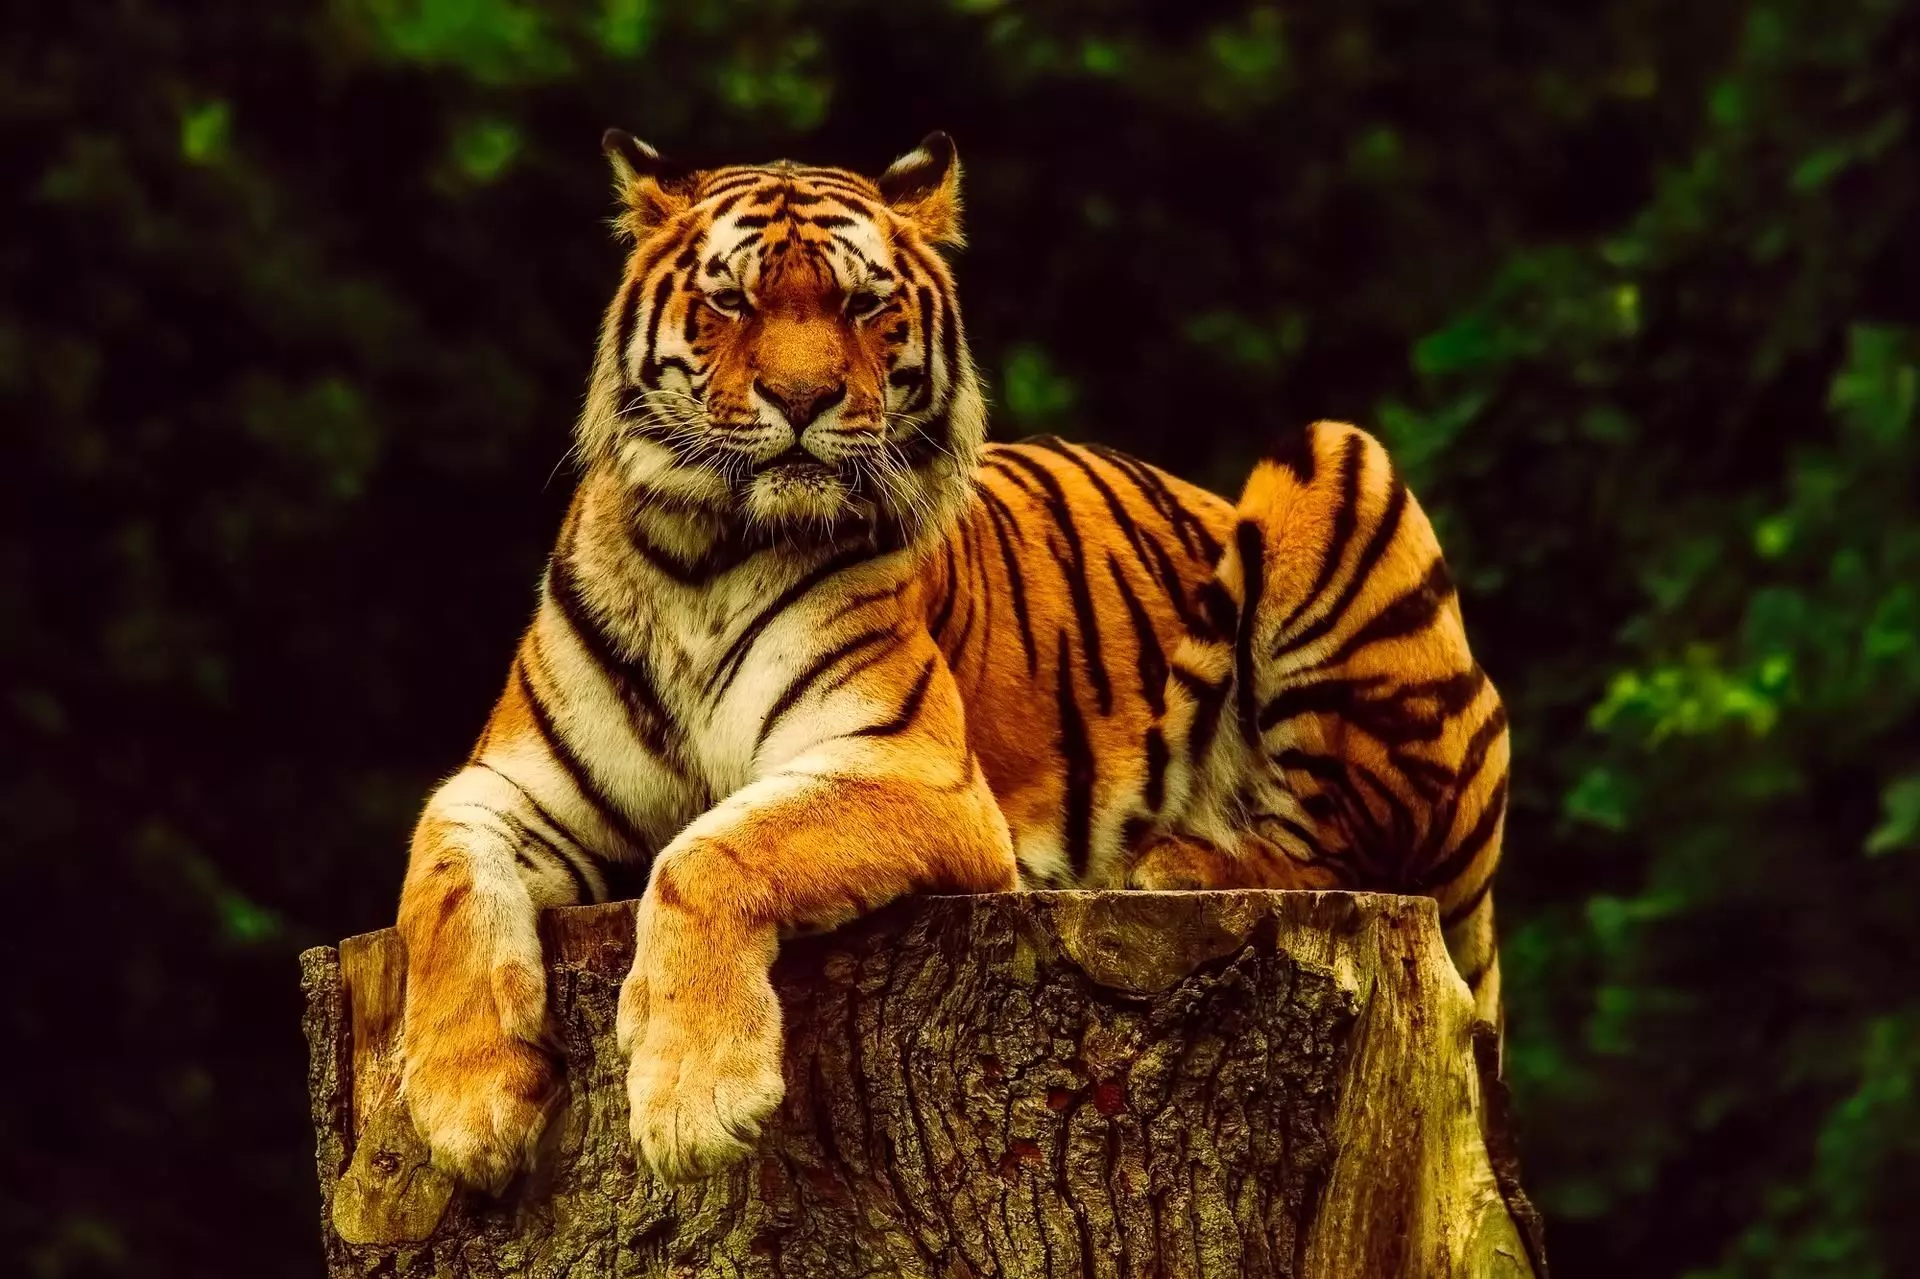 अंतर्राष्ट्रीय बाघ दिवस पर विशेष : आज भी कहां सुरक्षित हैं बाघ, उनके इतिहास और व्यवहार को जानने की जरूरत